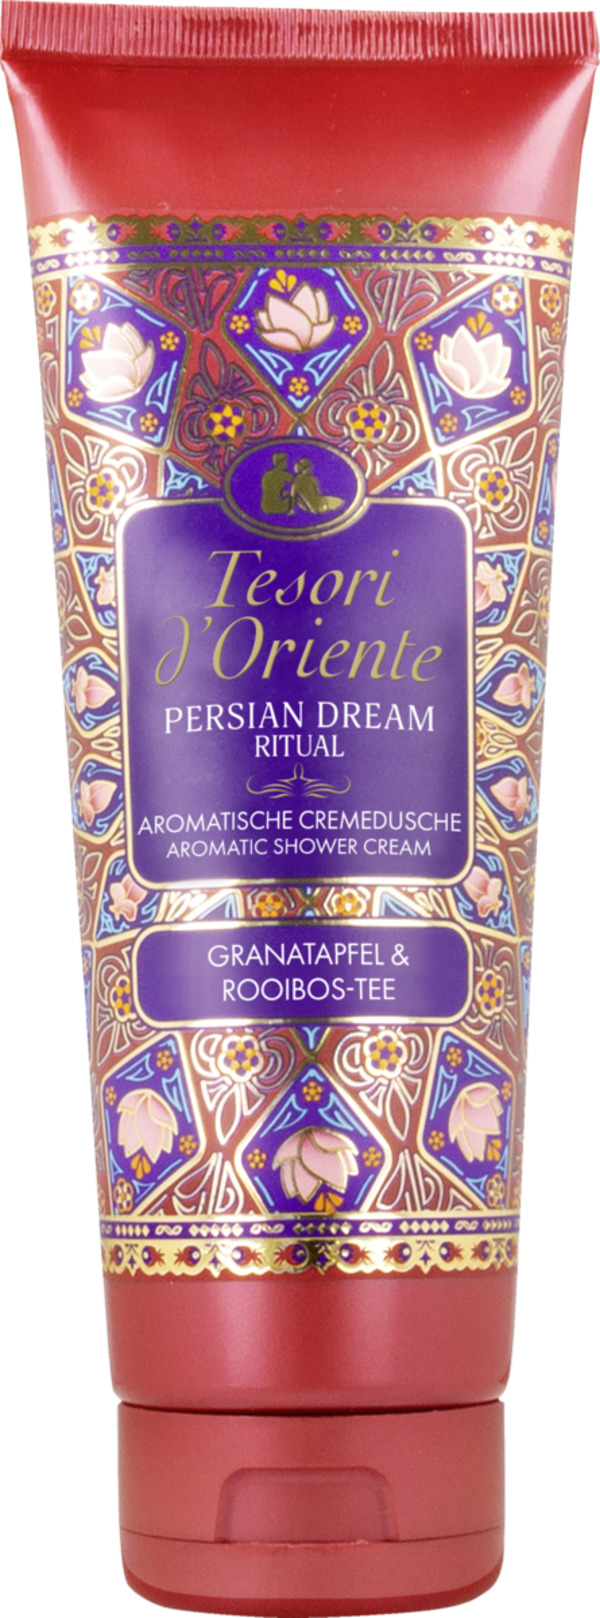 Bild 1 von Tesori d'Oriente Aromatische Cremedusche PERSIAN DREAM Granatapfel & Rooibos-Tee